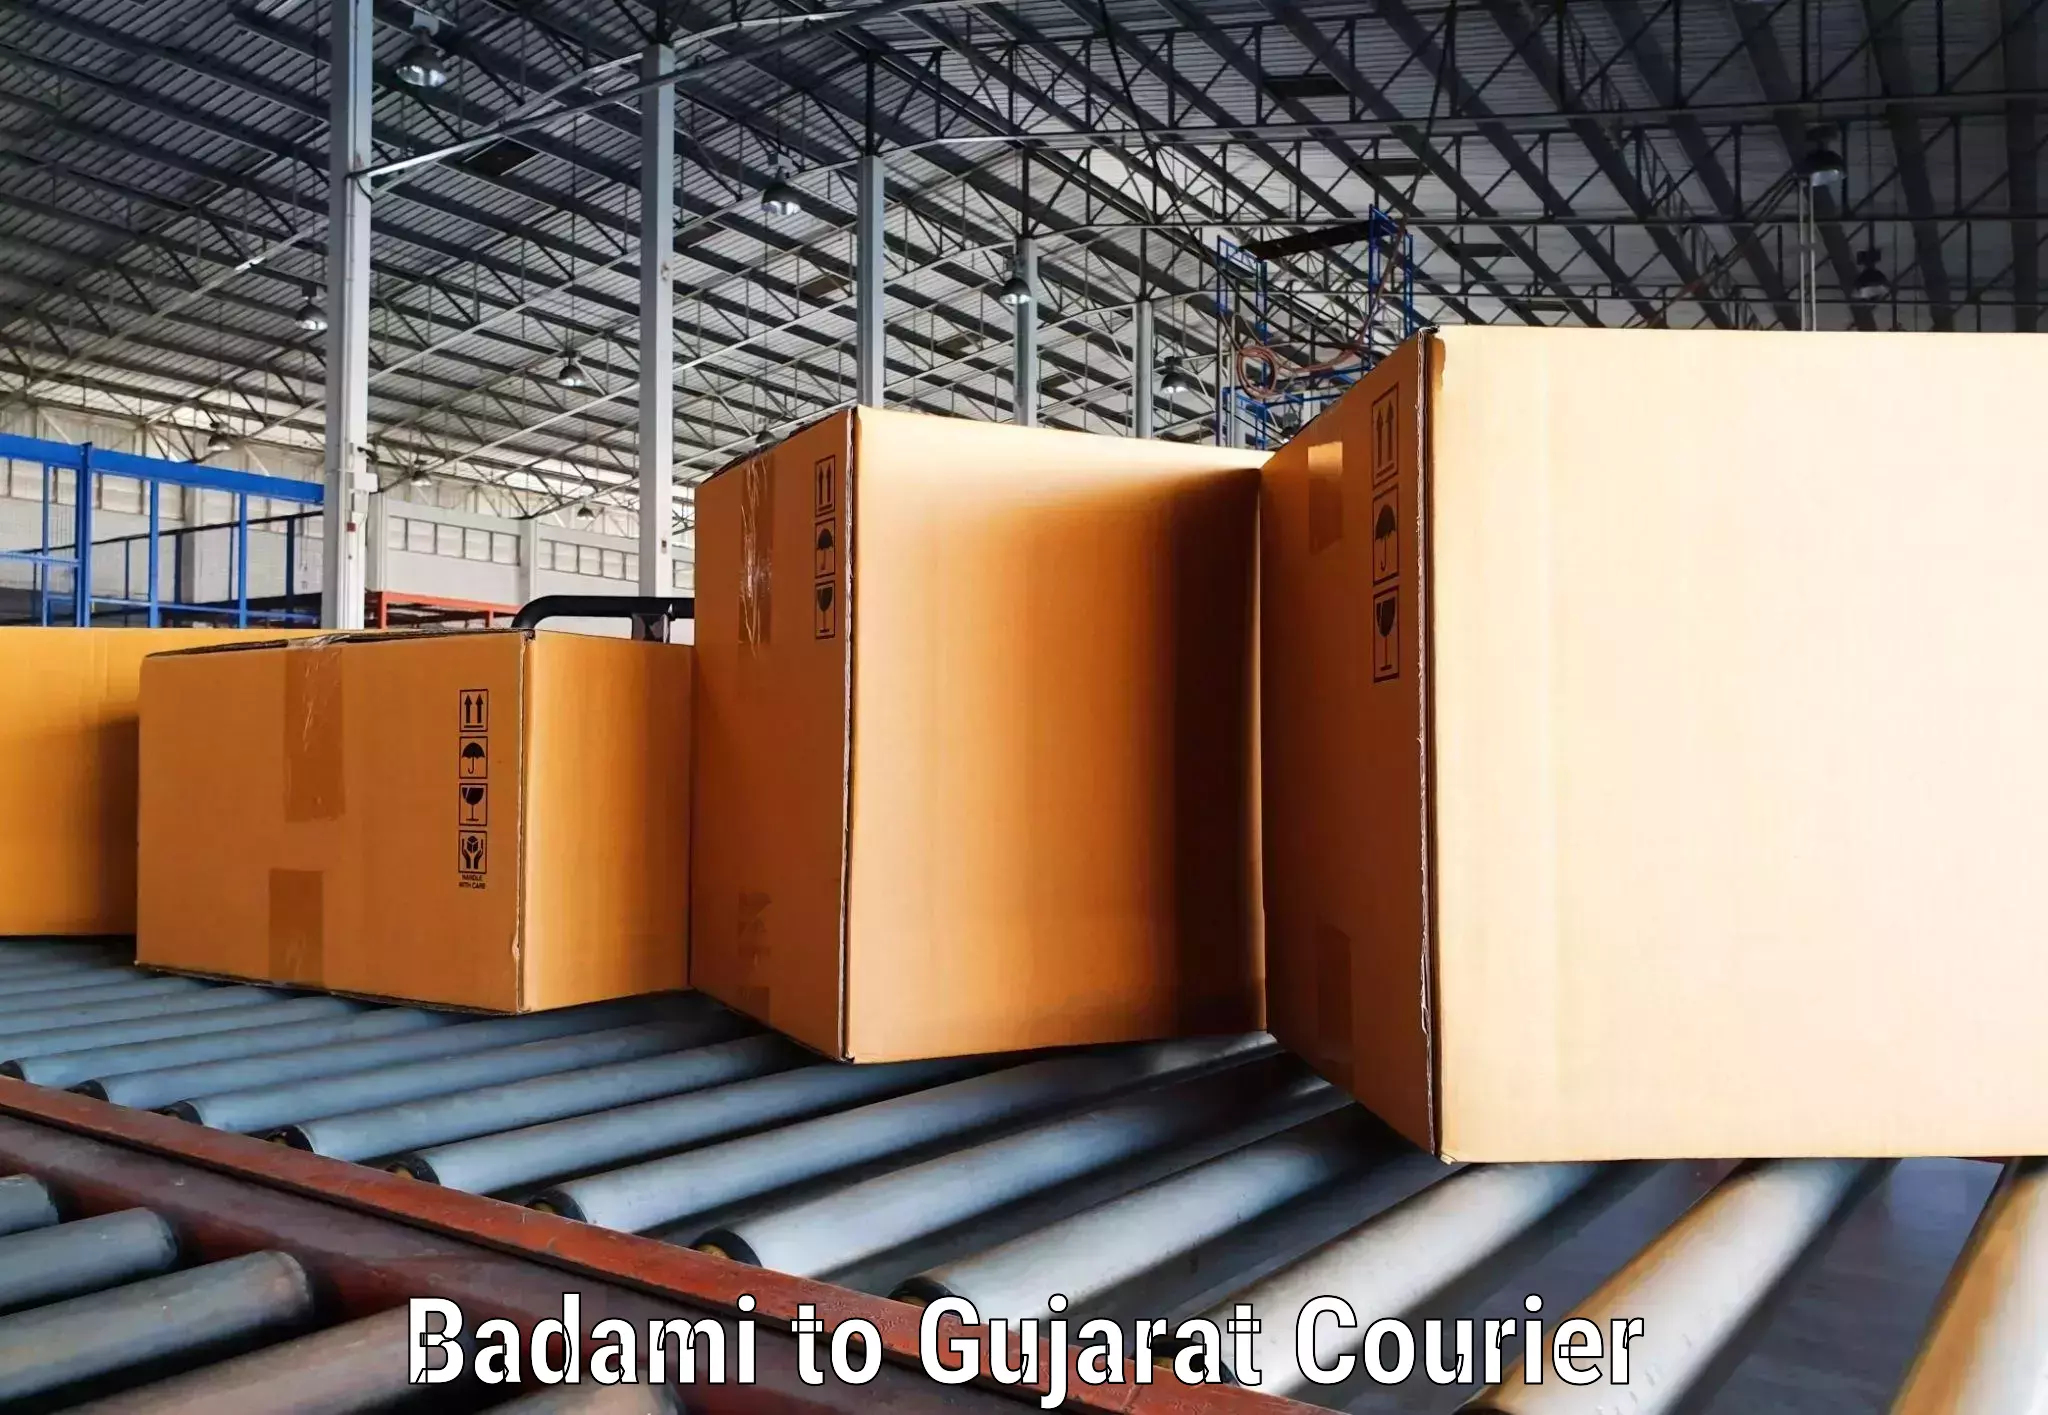 Digital courier platforms Badami to Kalol Gujarat